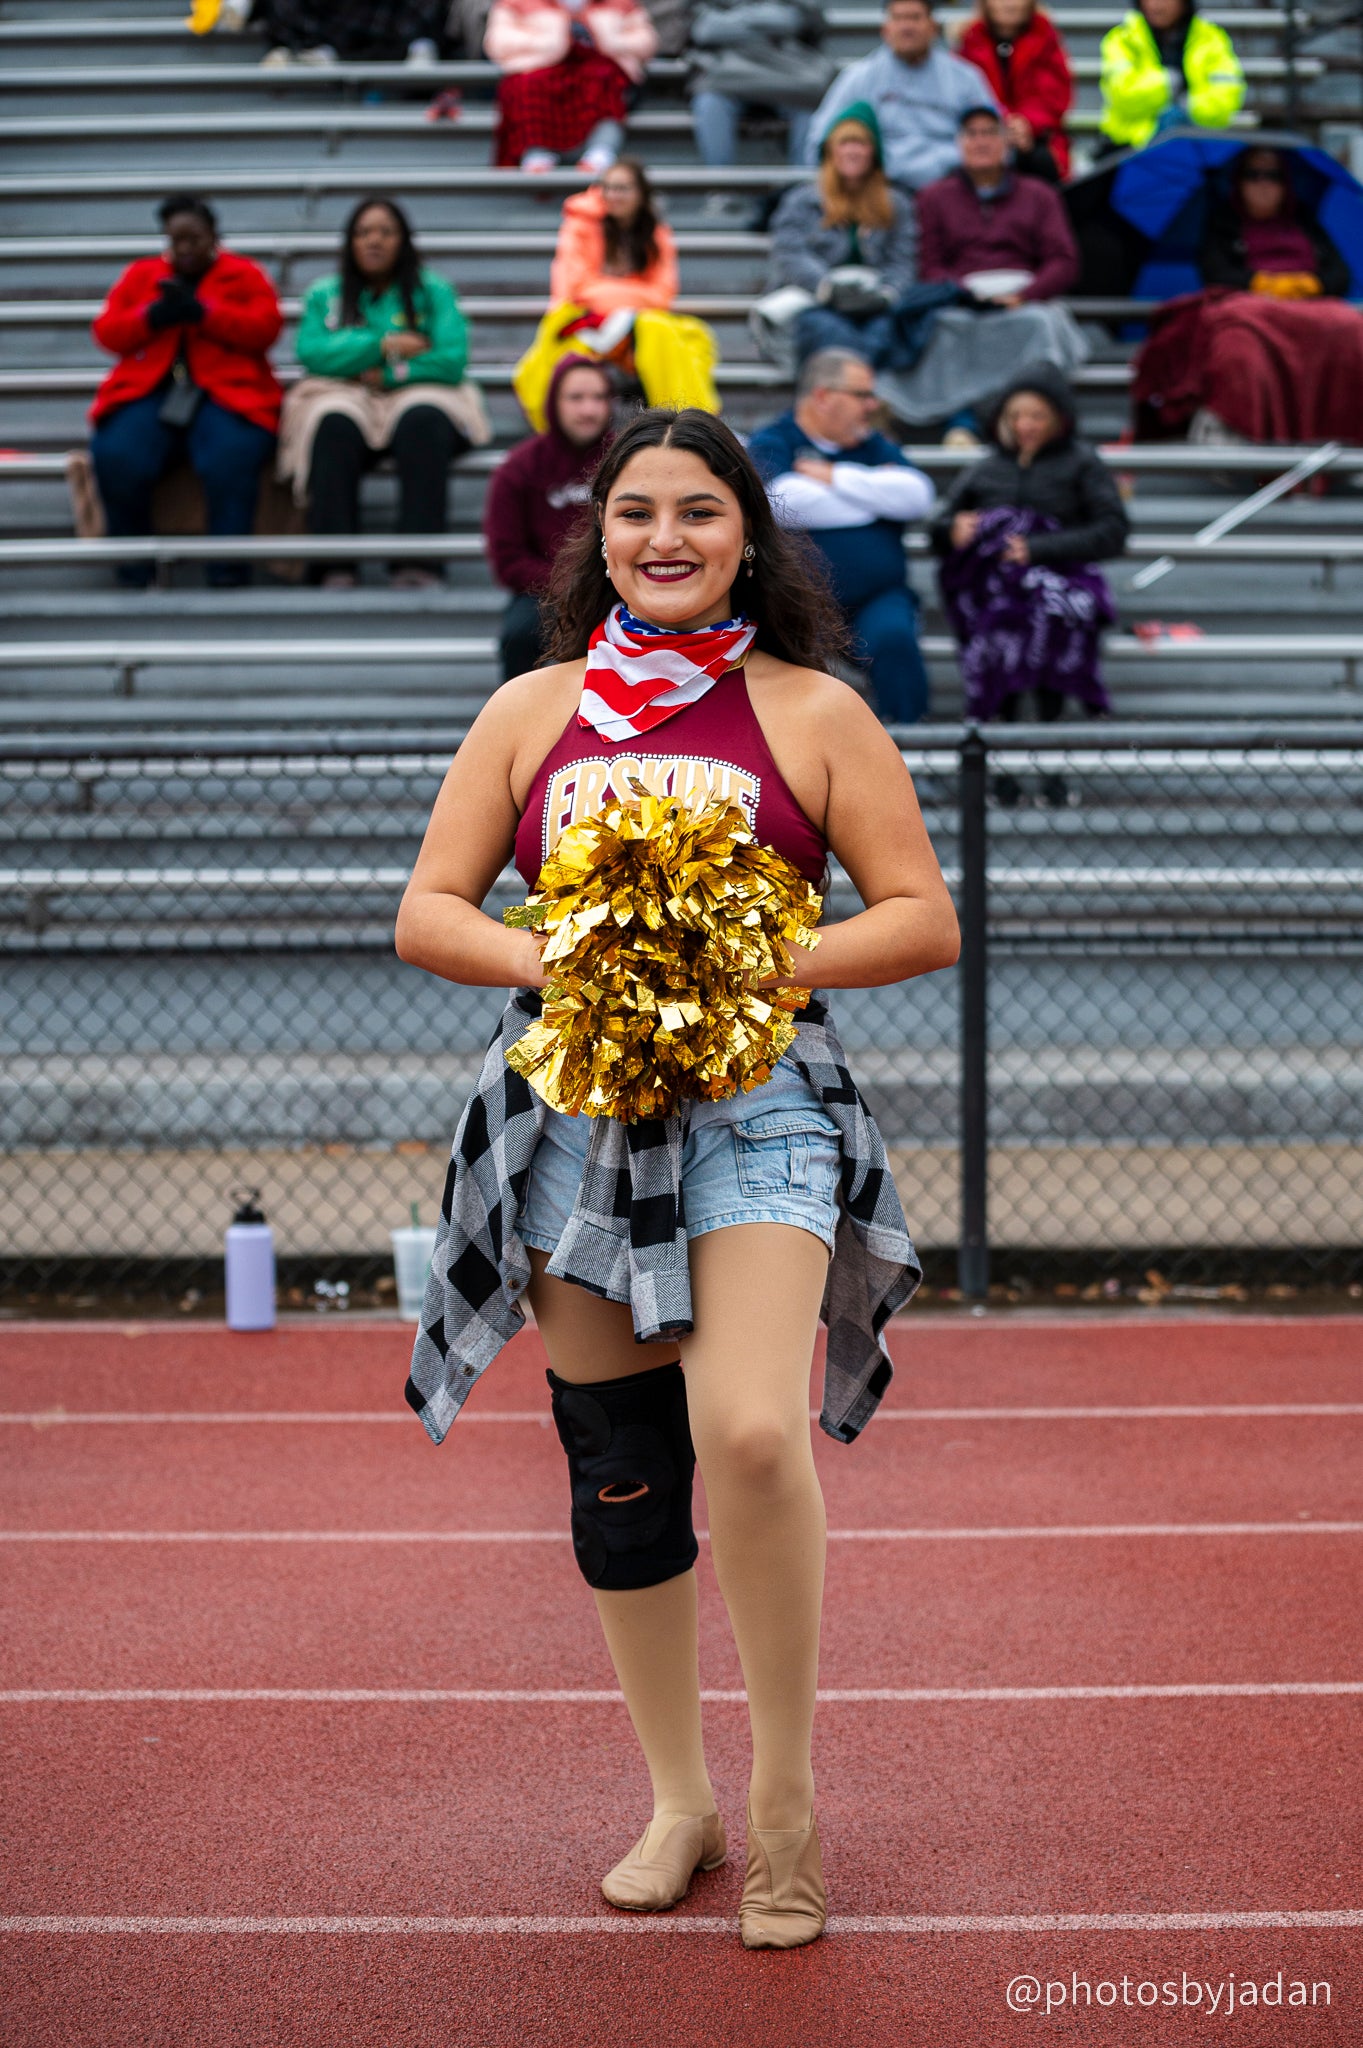 Cheerleader poses at a football game